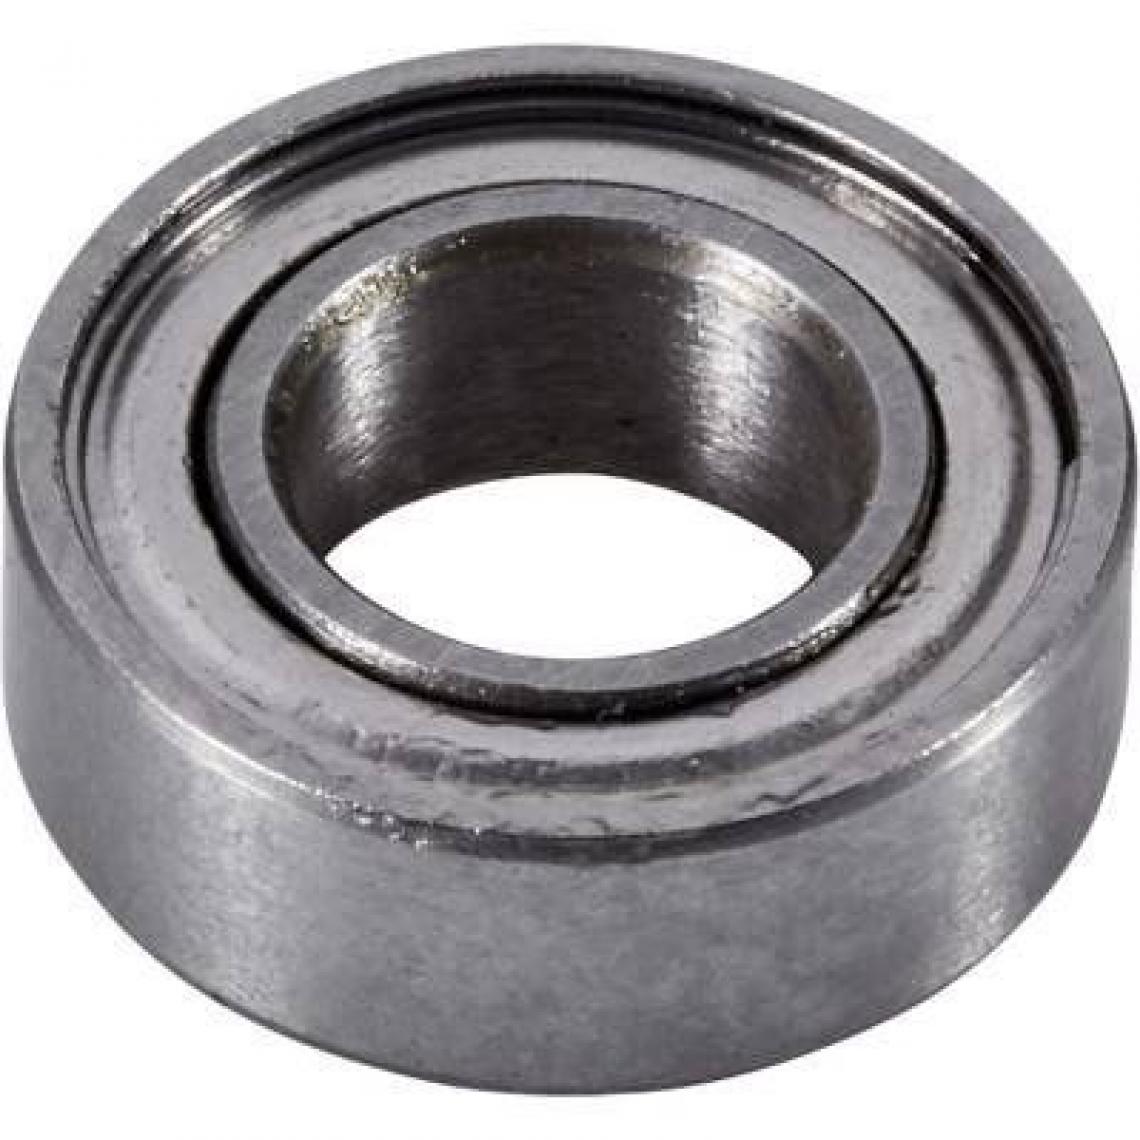 Inconnu - Reely Roulement à bille en acier chromé diamètre intérieurâ€¯: vitesse 8 mm de diamètre extérieurâ€¯: 12 mm (Max.)â€¯: 52000 tr/min - Accessoires et pièces